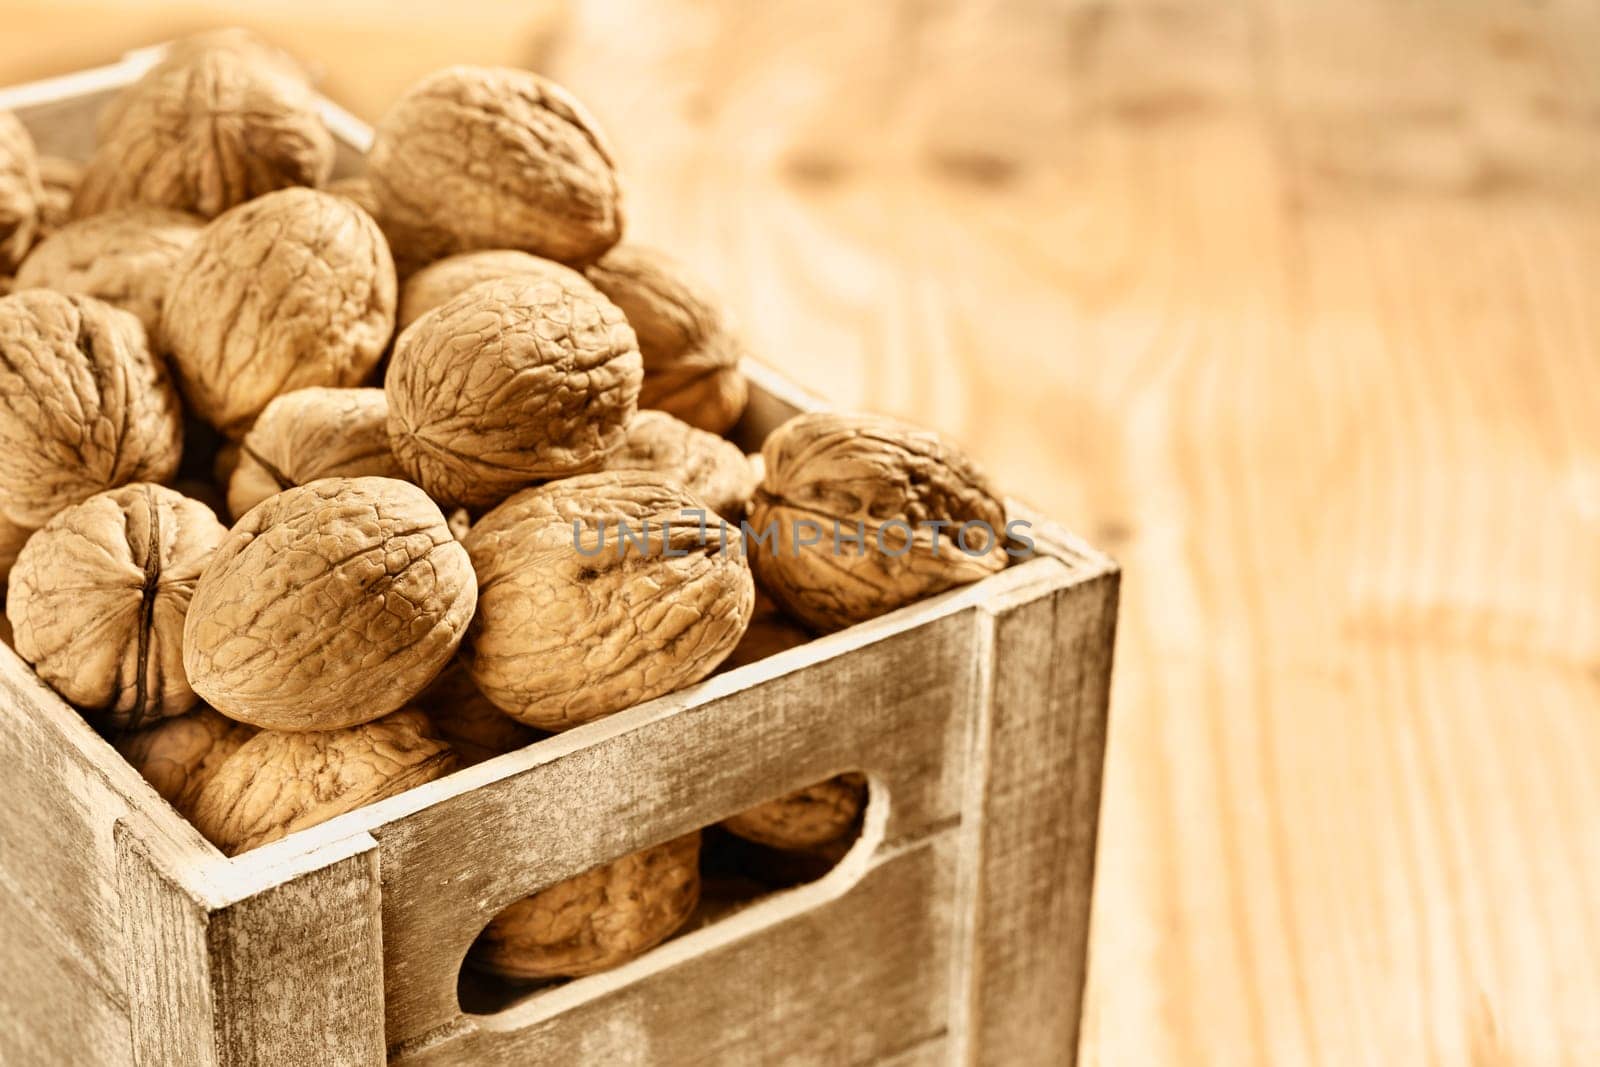 Walnuts in wooden box by victimewalker